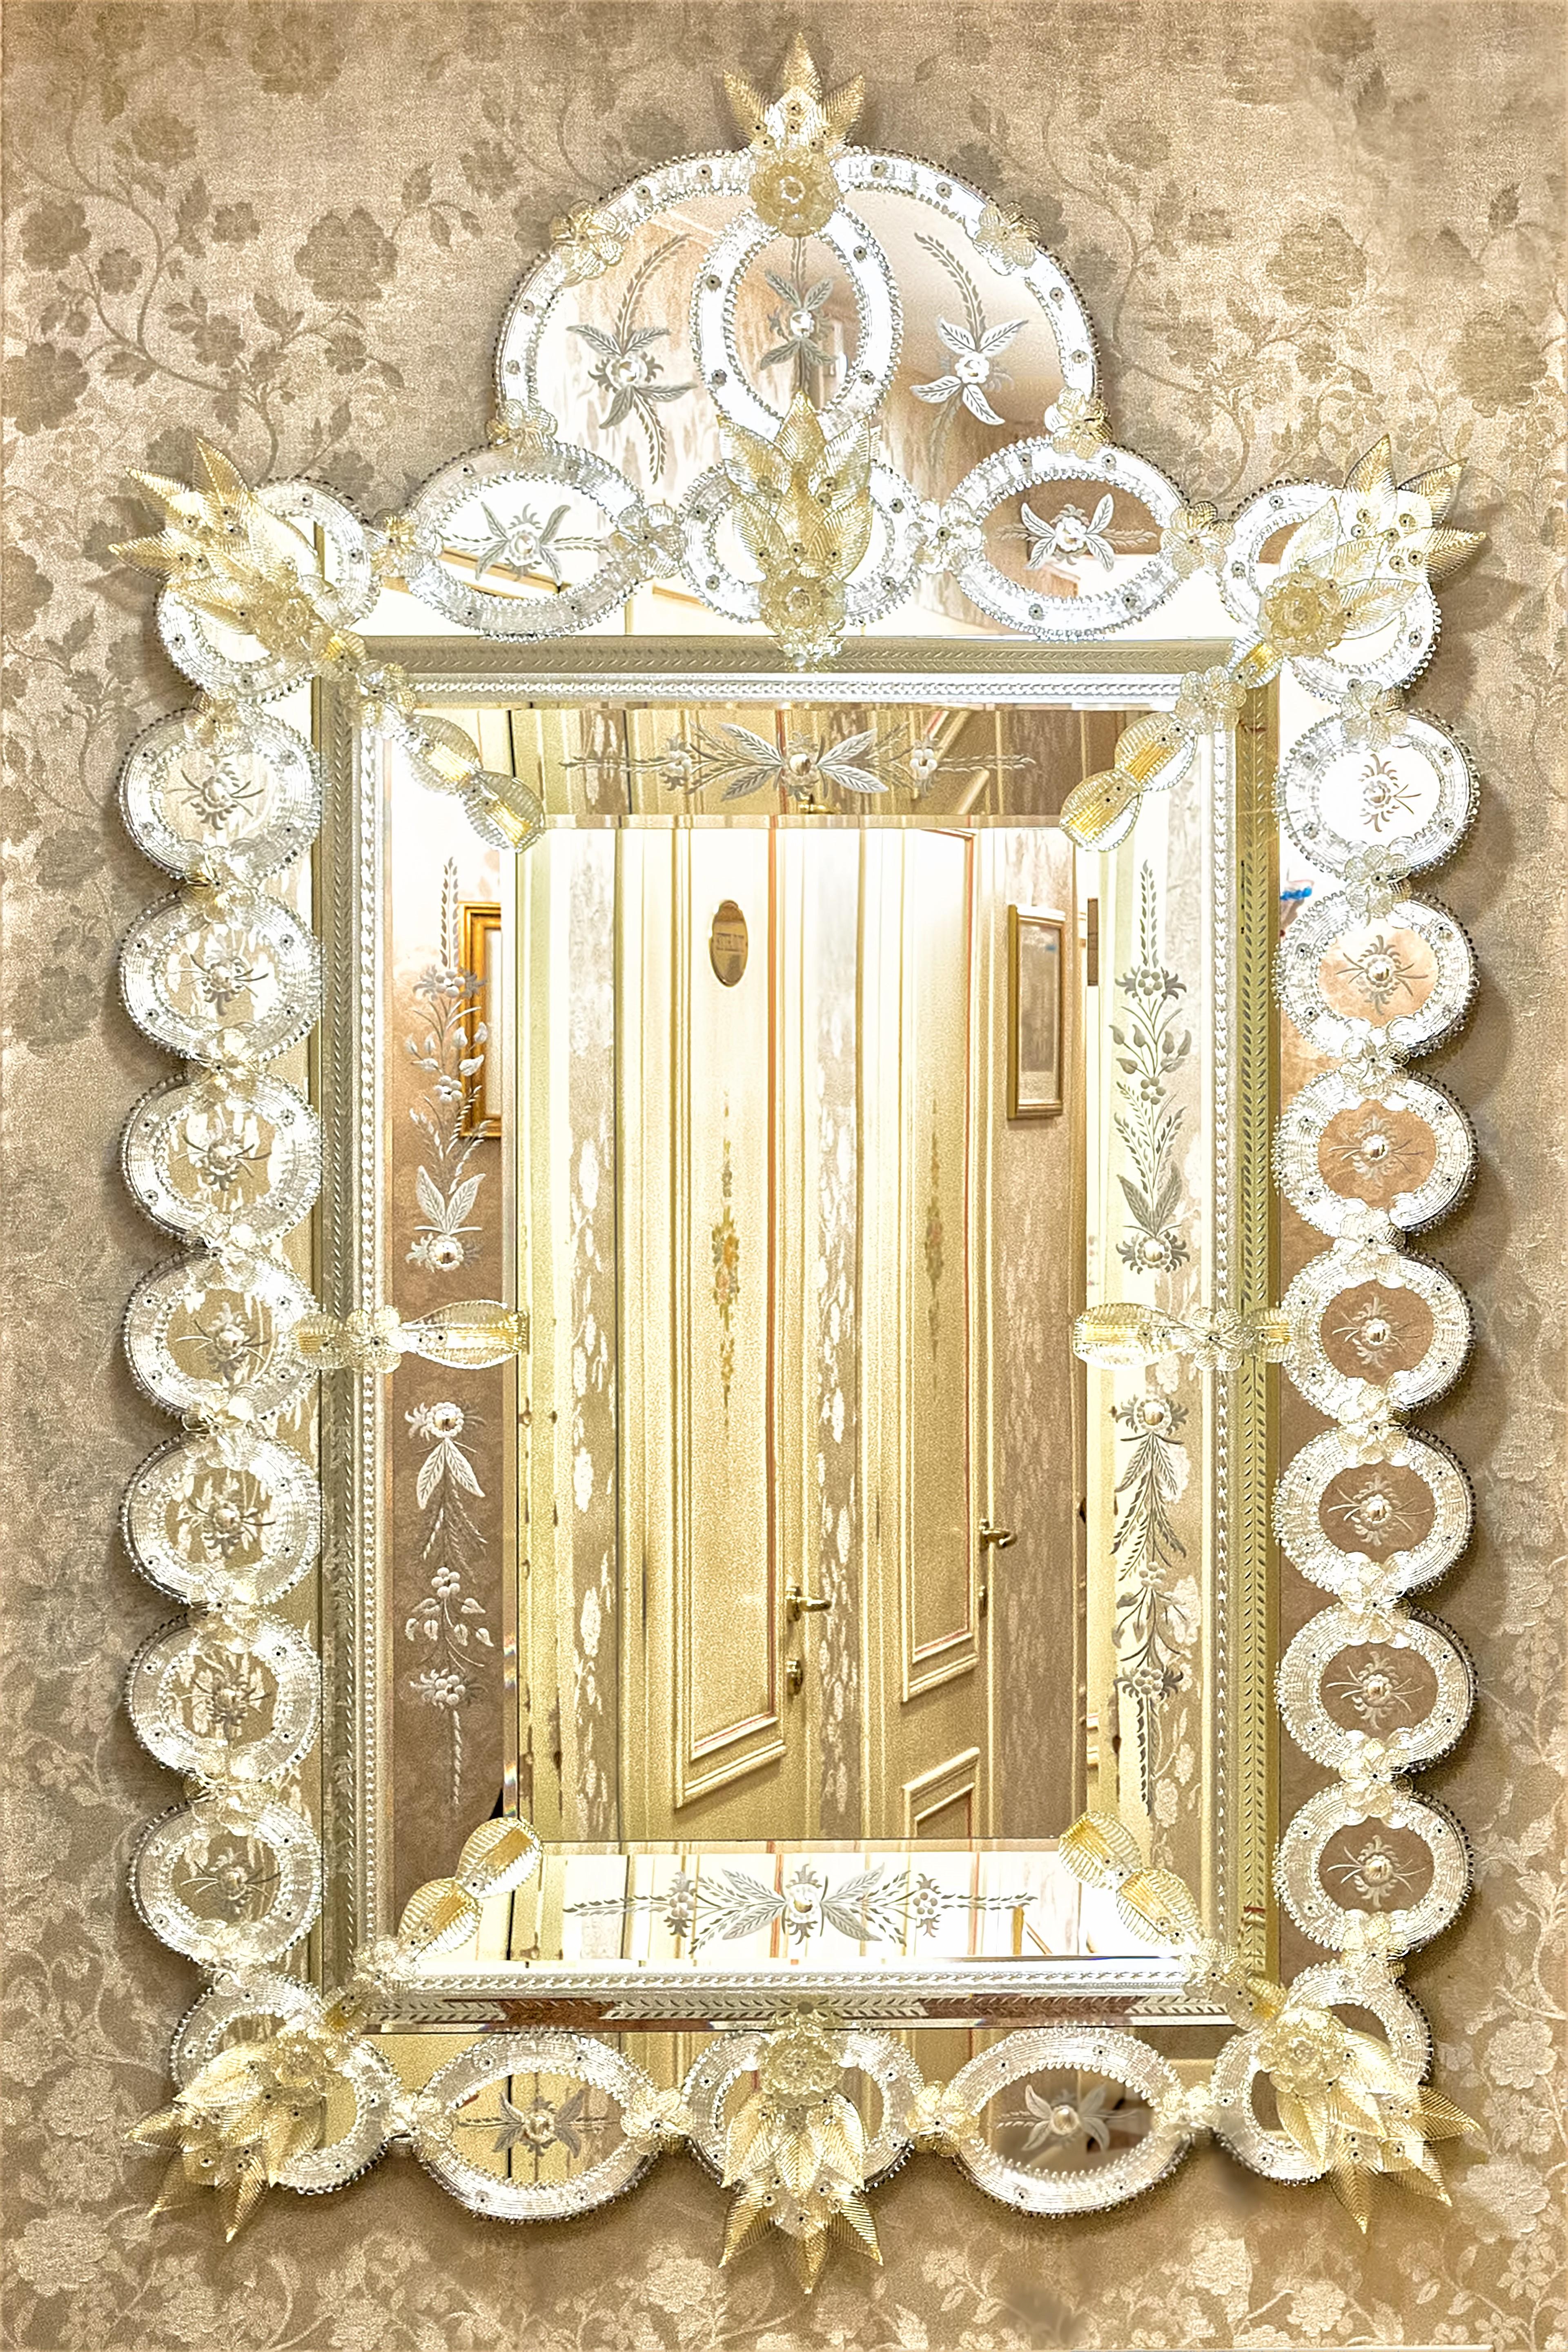 Luxuriöser Spiegel aus Muranoglas im venezianischen Stil, hergestellt von Fratelli Tosi auf der Insel Murano in silberner Farbe mit goldenen Blumen und Blättern, graviert, abgeschrägt und vollständig von Hand bearbeitet nach der Murano-Tradition,